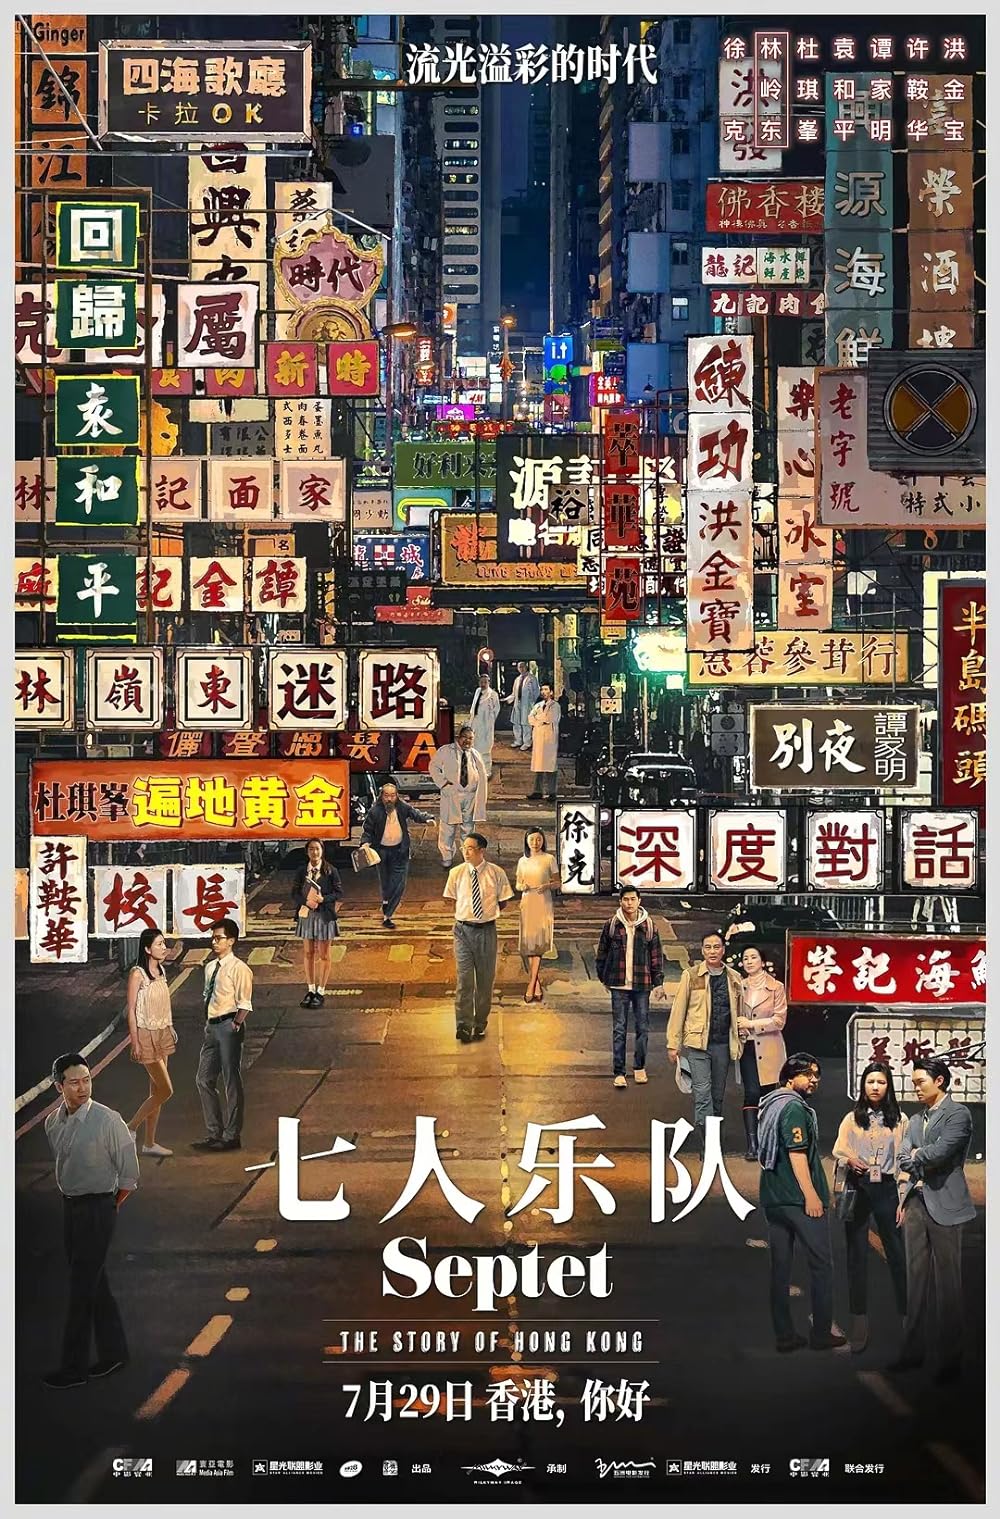 หนัง Septet The Story Of Hong Kong (2020) ฮ่องกงที่รัก